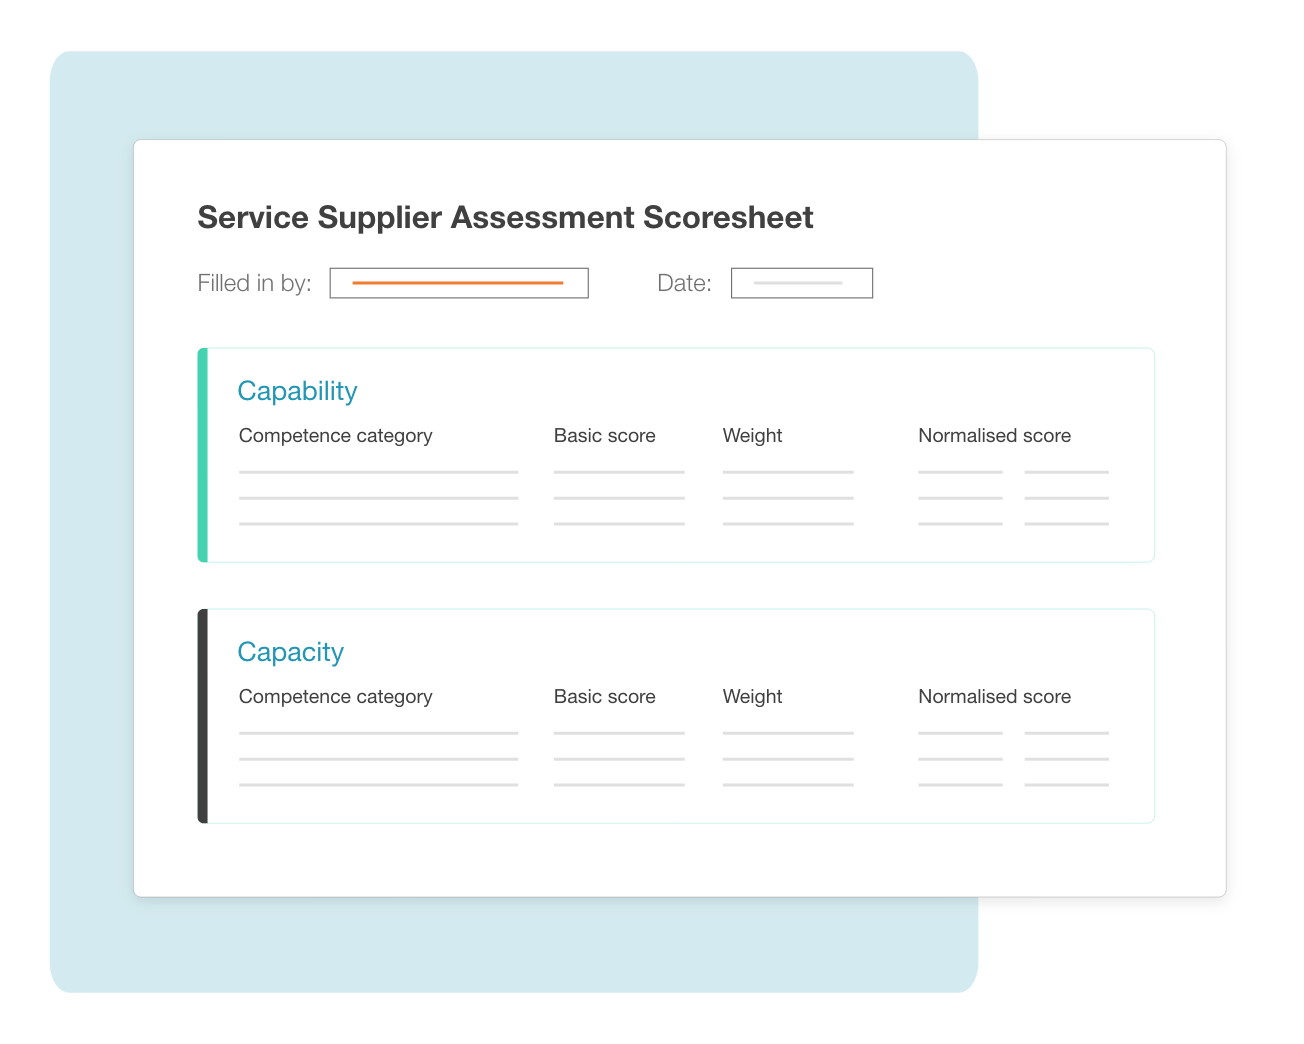 Service Supplier Assessment Scoresheet